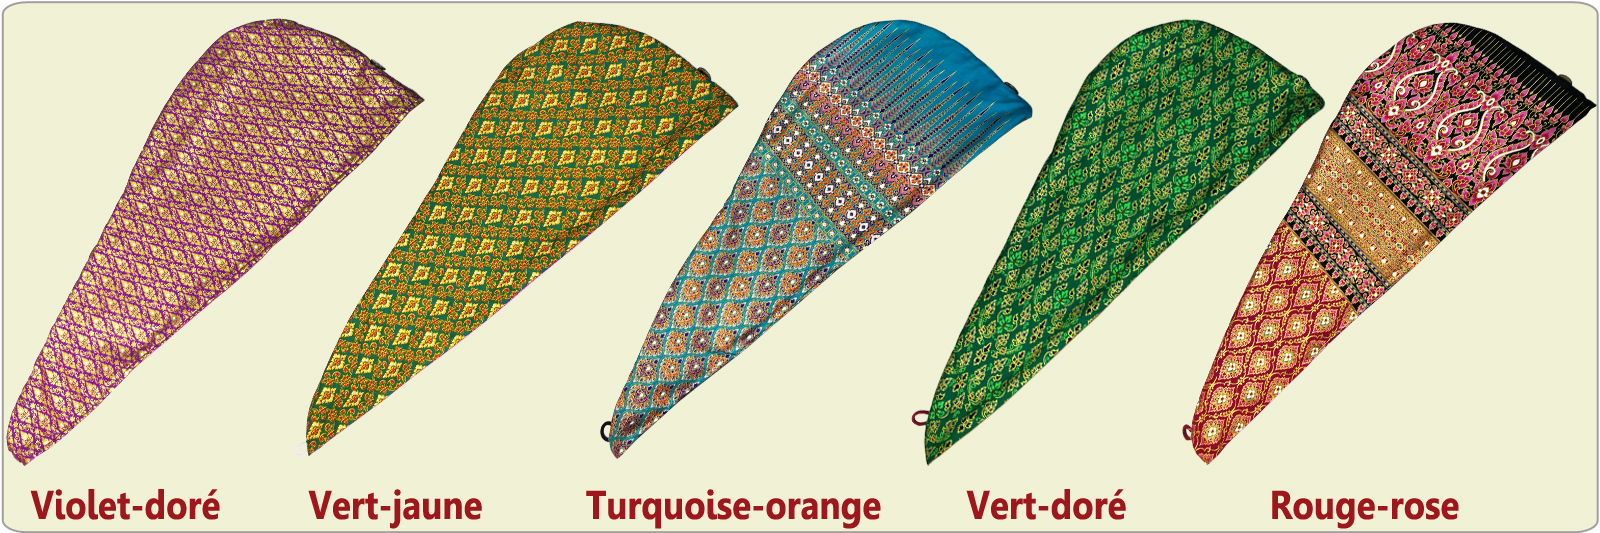 Le bonnet de soin capillaire se décline en différent coloris, réalisés en tissus traditionnels thaïlandais. Pour commander un coloris précis, utilisez le sélecteur "Coloris" situé juste en-dessous du prix de l'article.